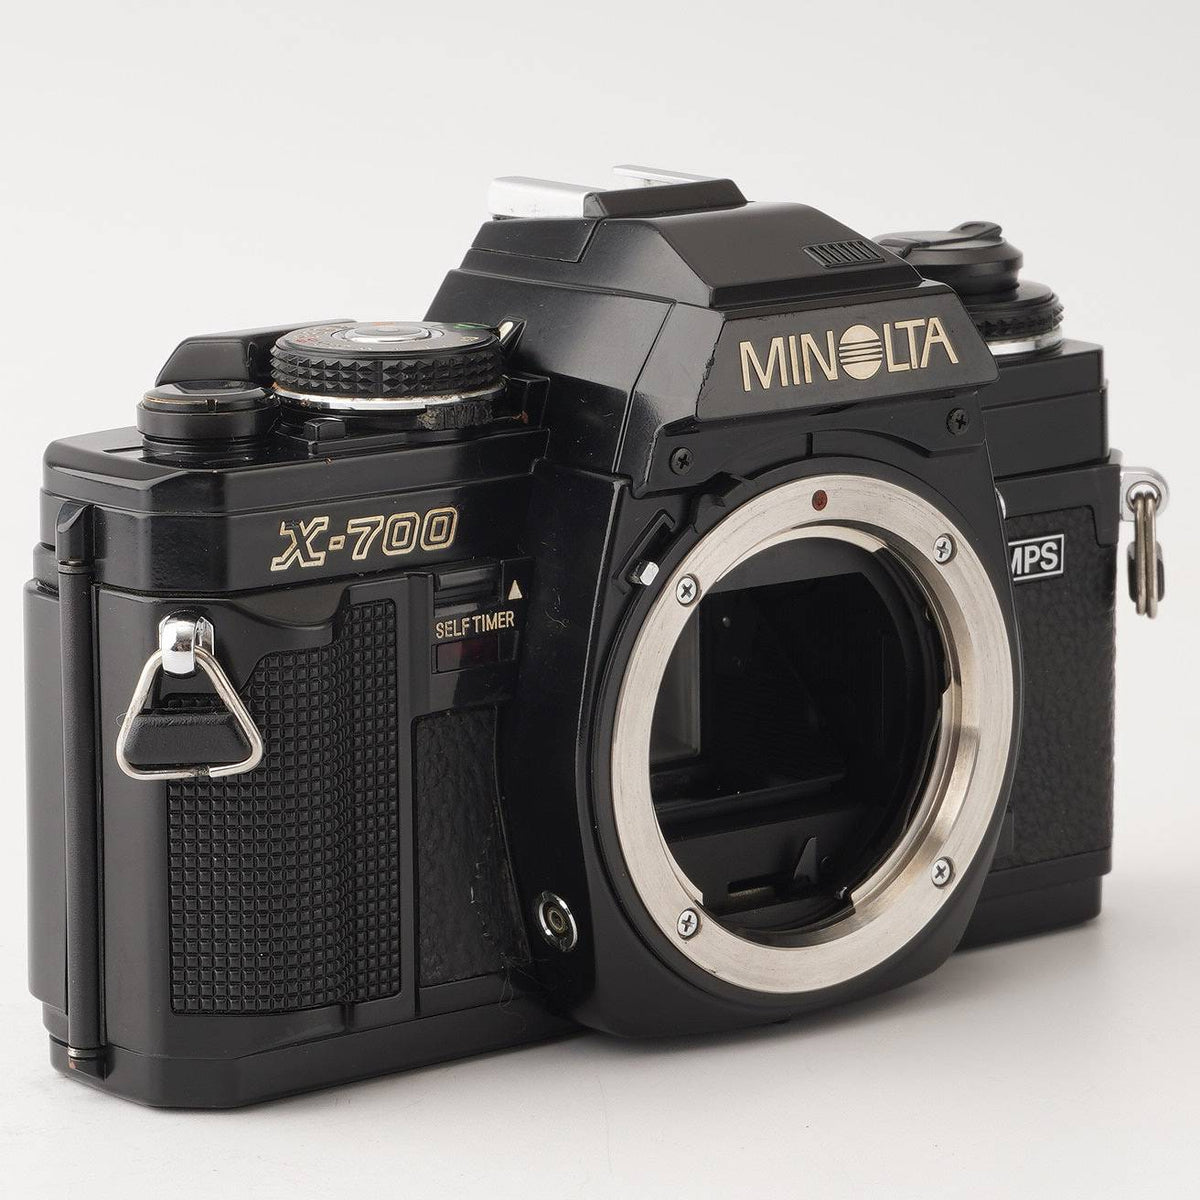 ミノルタ Minolta X-700 MPS / MD ZOOM 35-70mm F3.5 MACRO